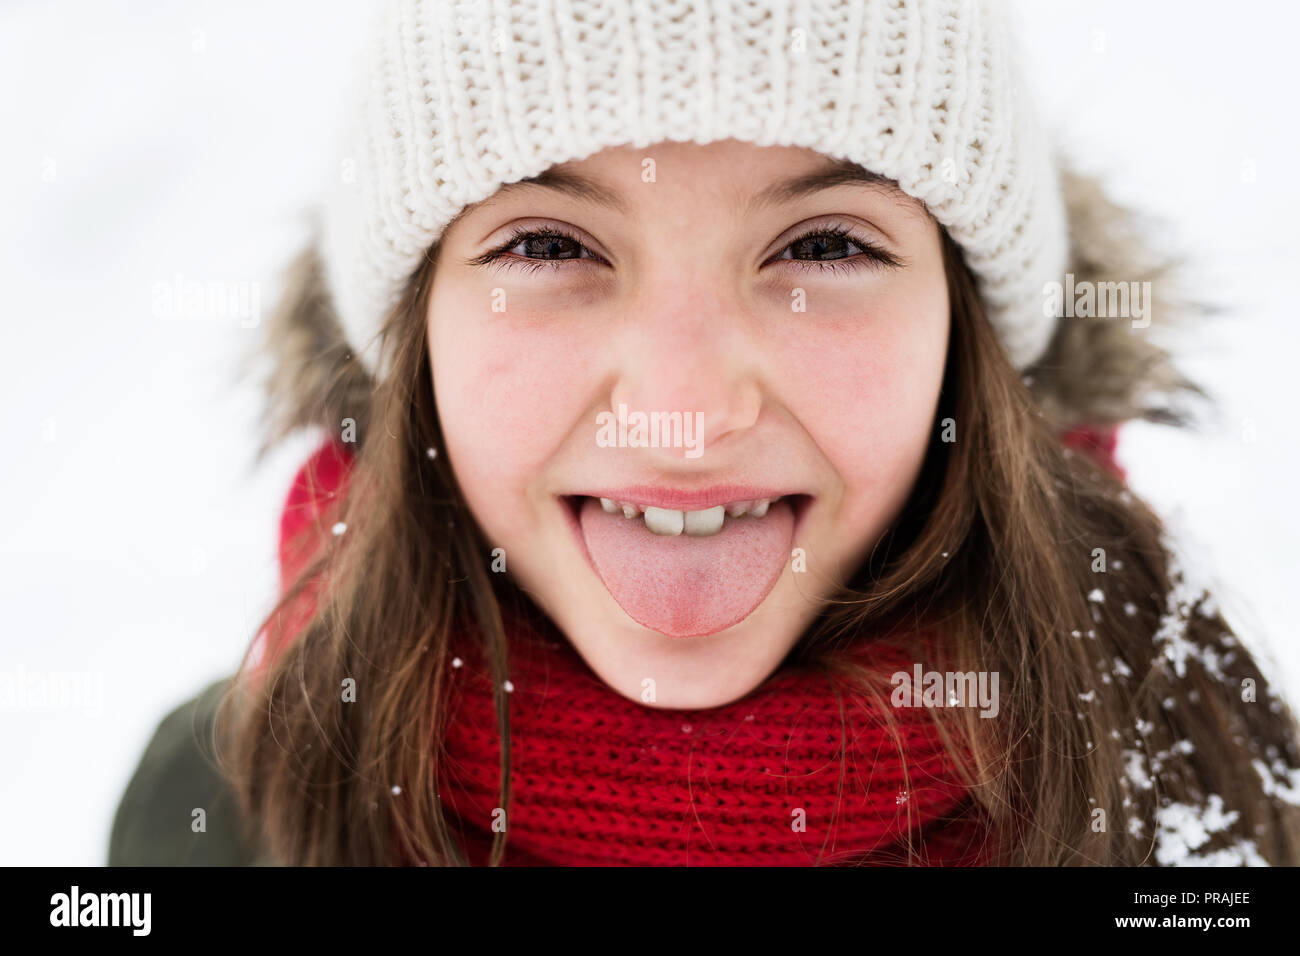 Una piccola ragazza avendo divertimento nella neve. Foto Stock